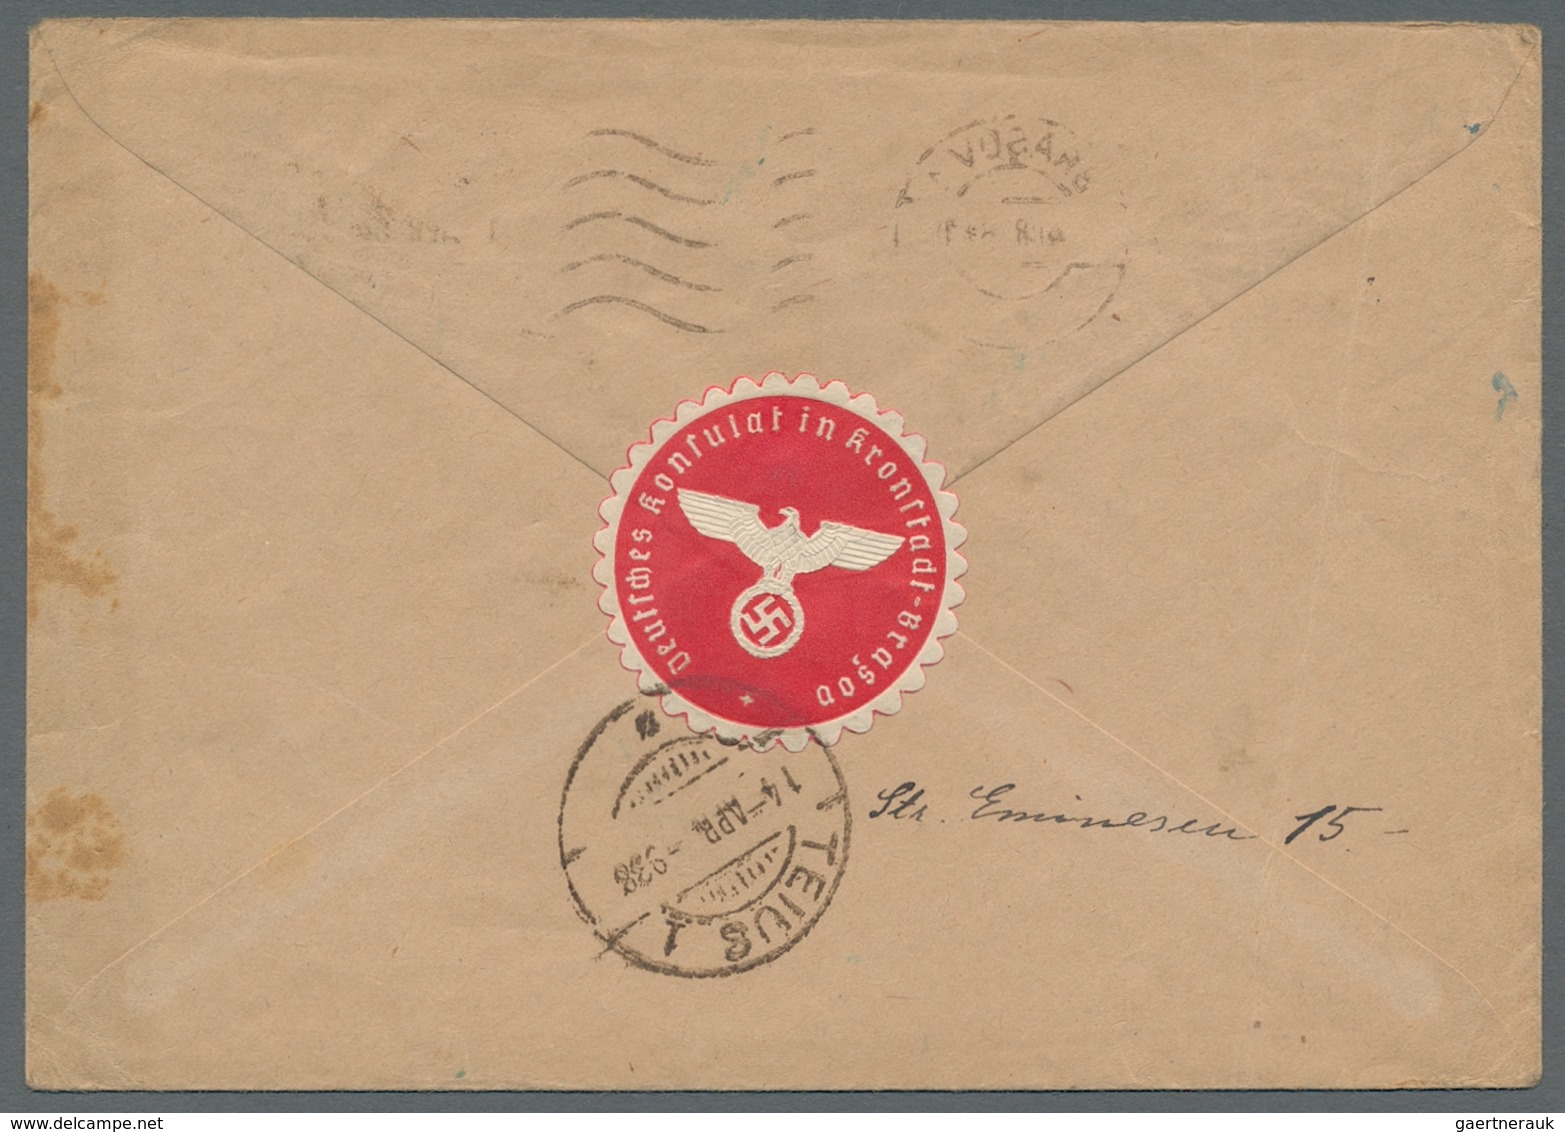 Thematik: Konsulatspost / consular mail: 1914/1958, Post von deutschen Konsulaten in Südafrika, Ägyp